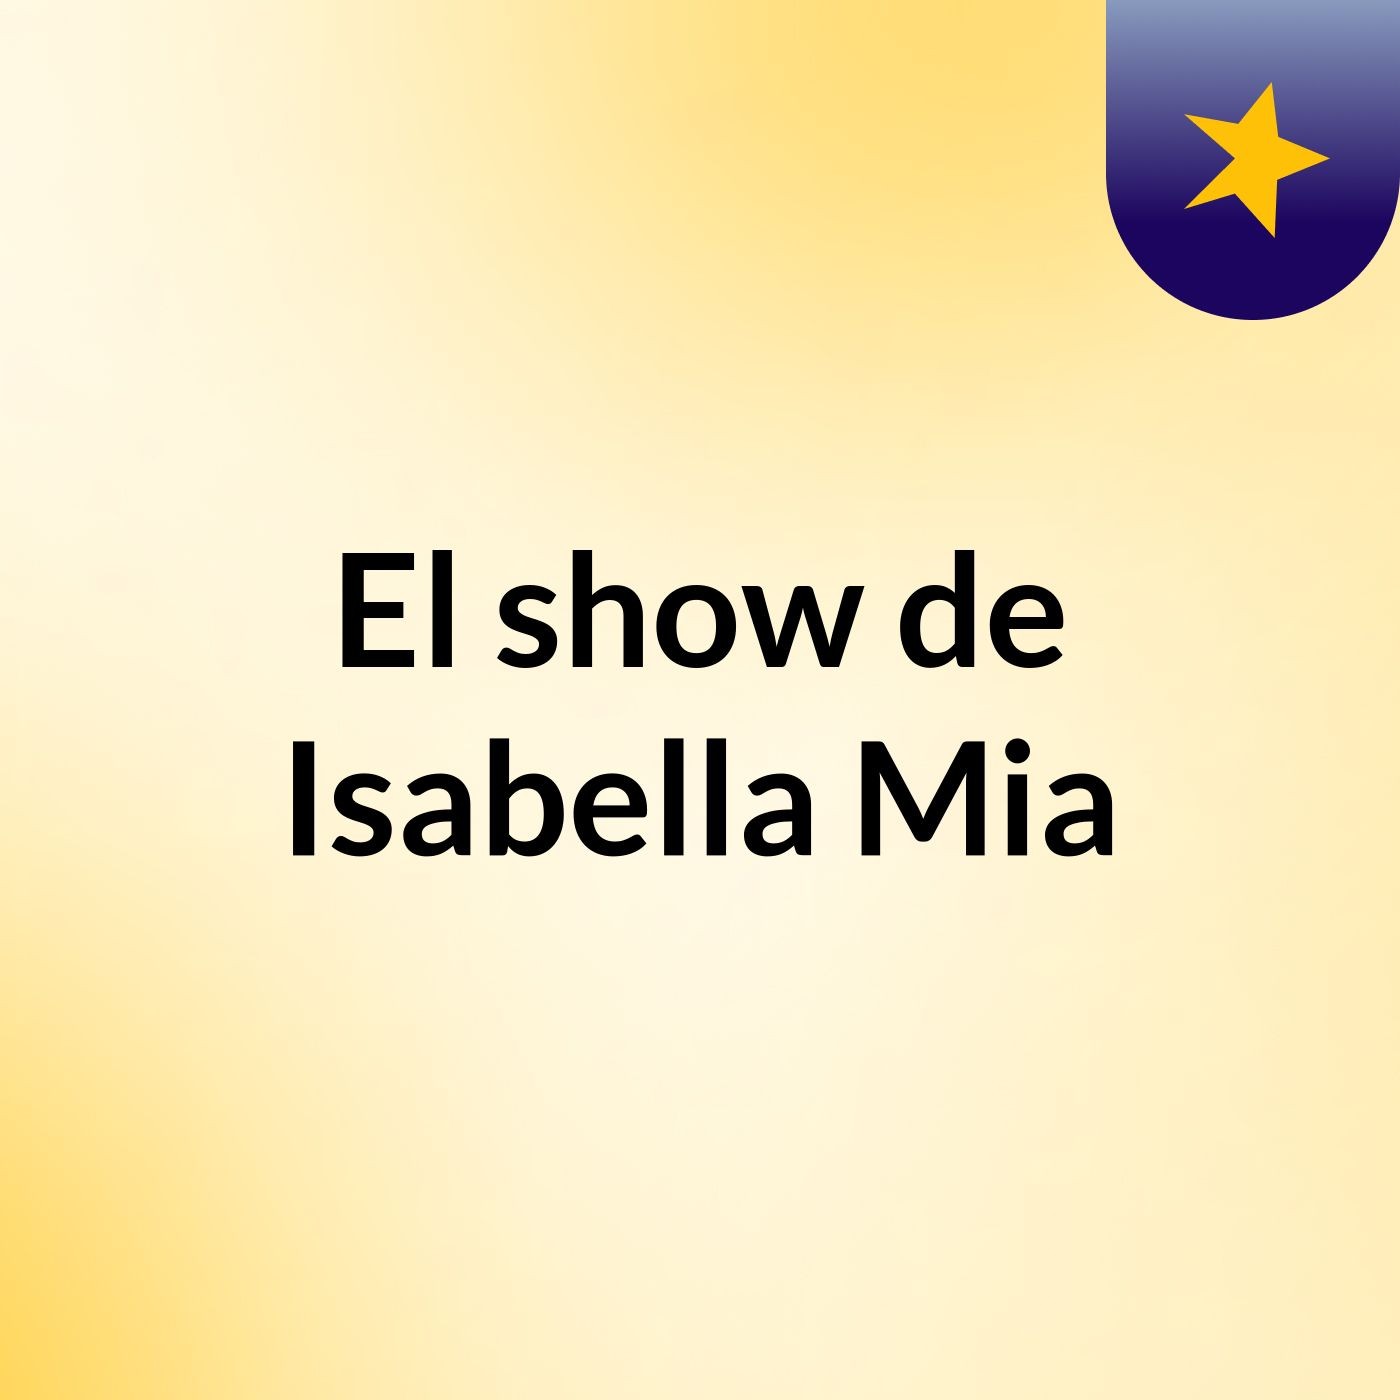 El show de Isabella Mia